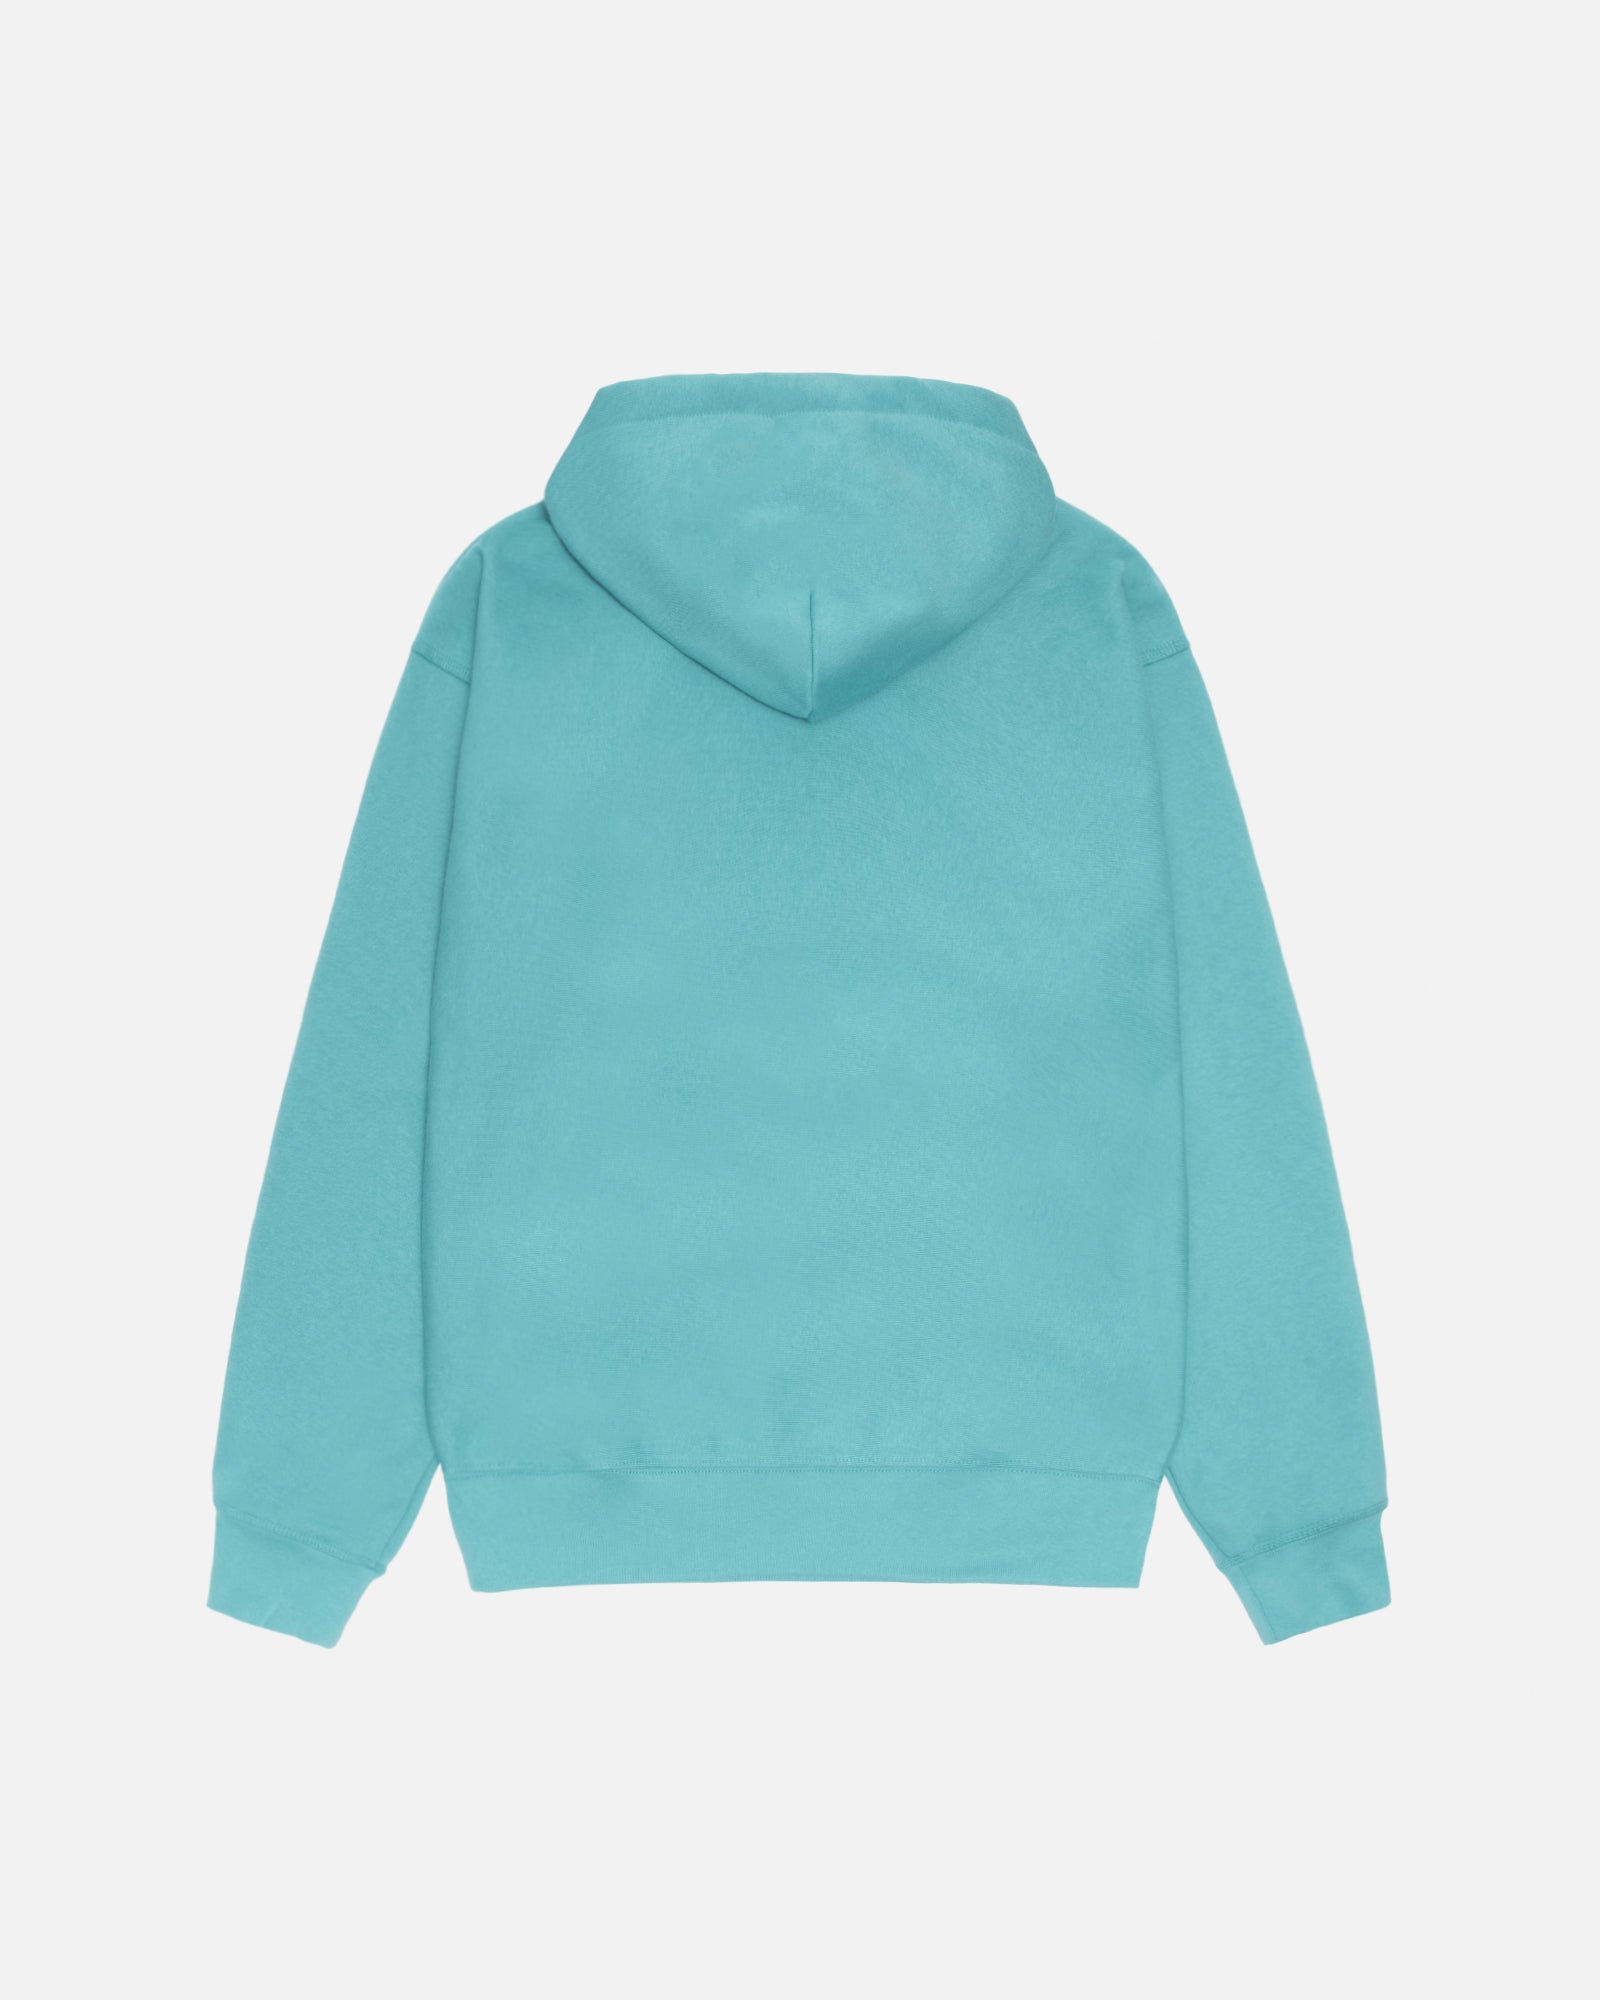 Sweats: Fleece Zip Up Sweatshirts by Stüssy